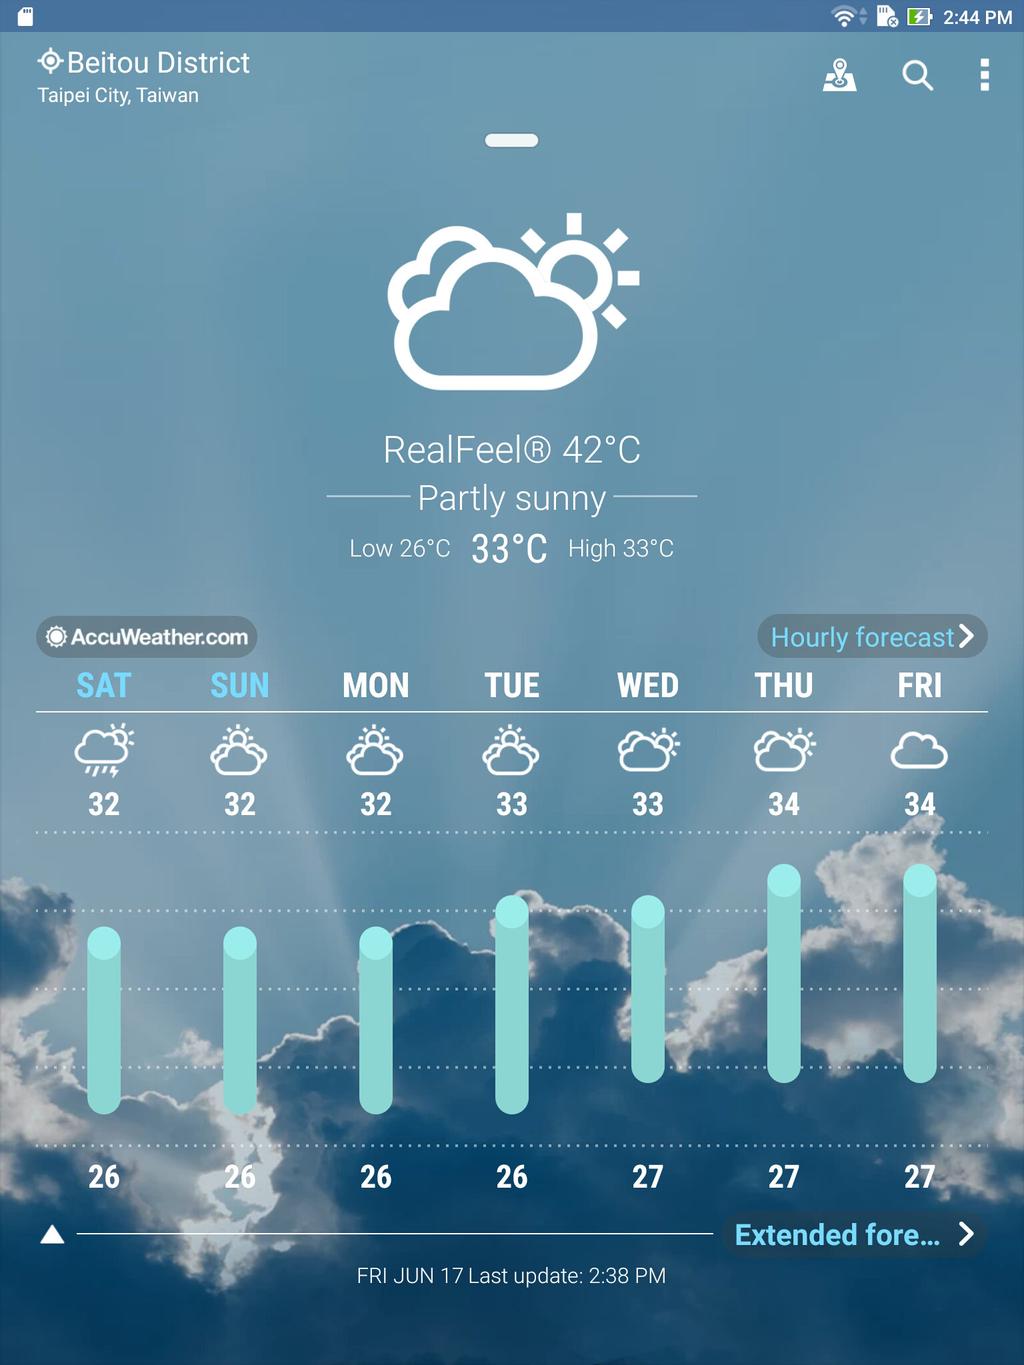 Cuaca dan Waktu Cuaca Dapatkan informasi terbaru tentang cuaca secara real-time langsung dari Tablet ASUS menggunakan aplikasi cuaca.